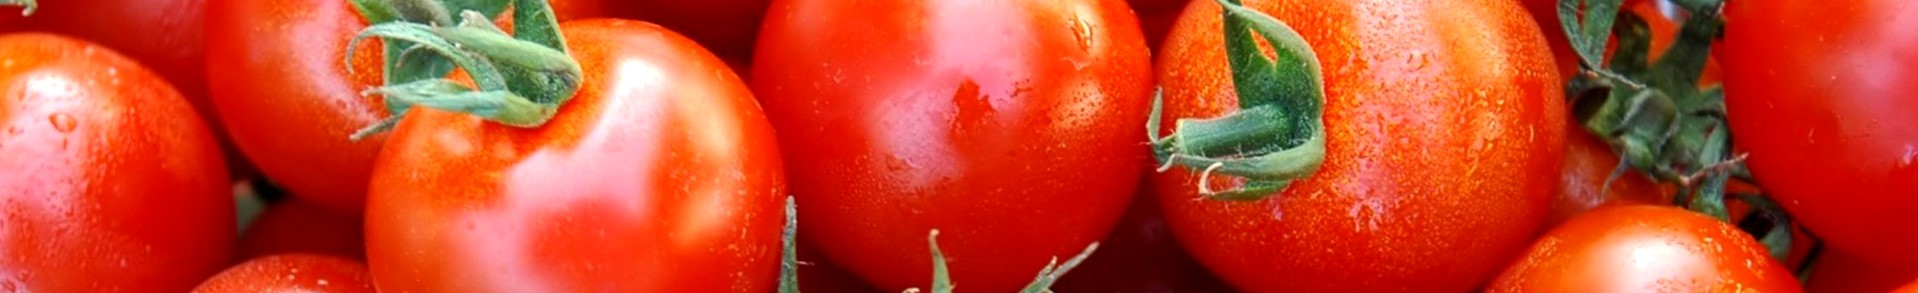 Pomodoro - Tomato - Tomate